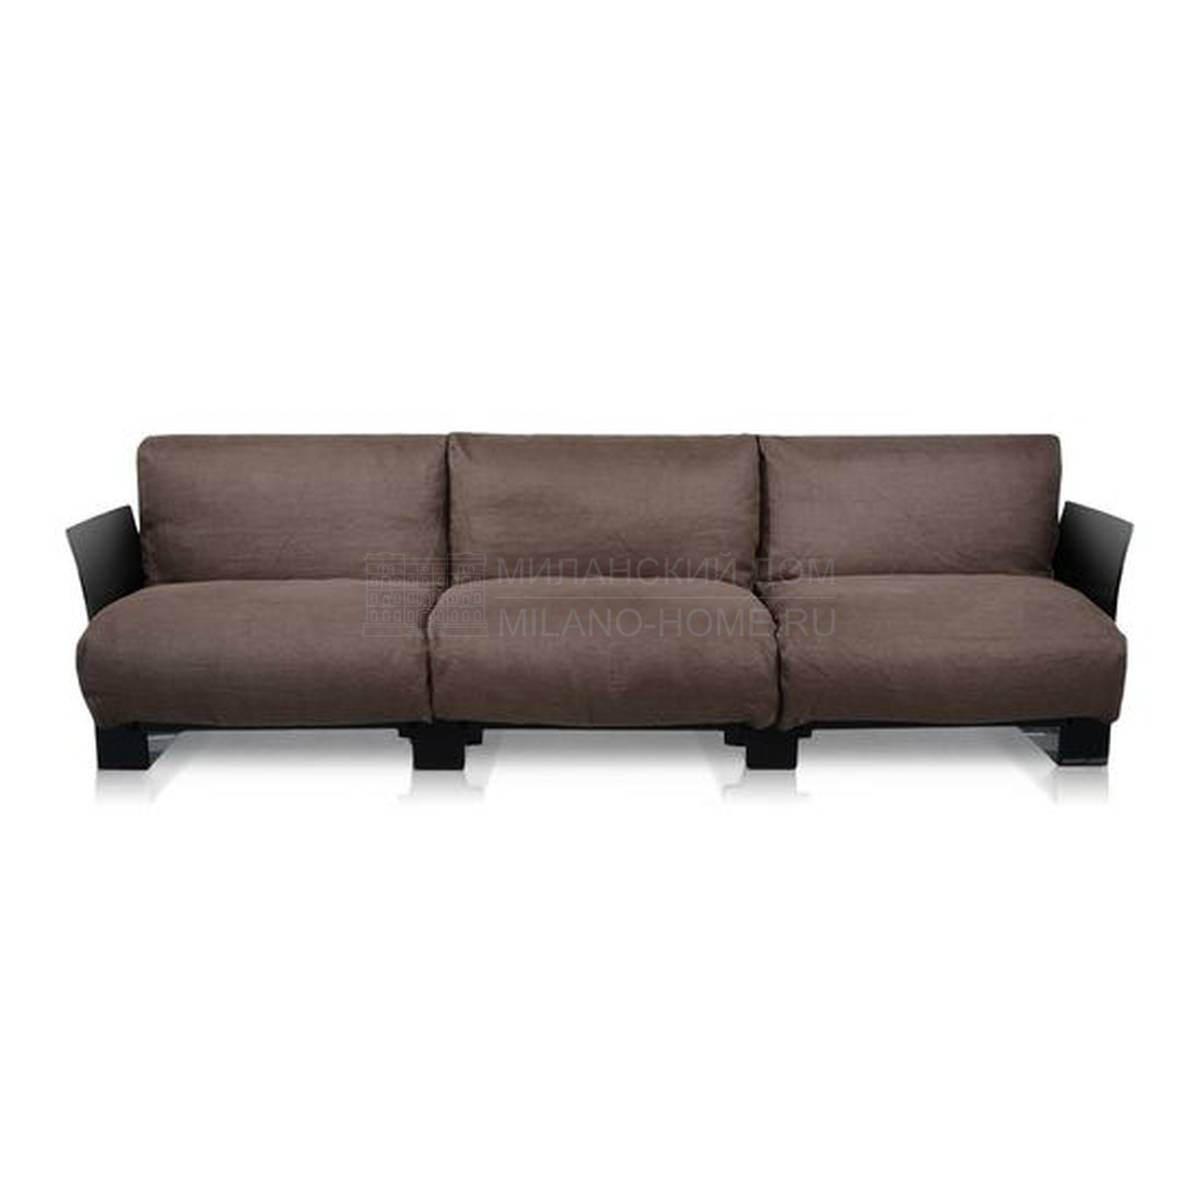 Прямой диван Pop Sofa из Италии фабрики KARTELL